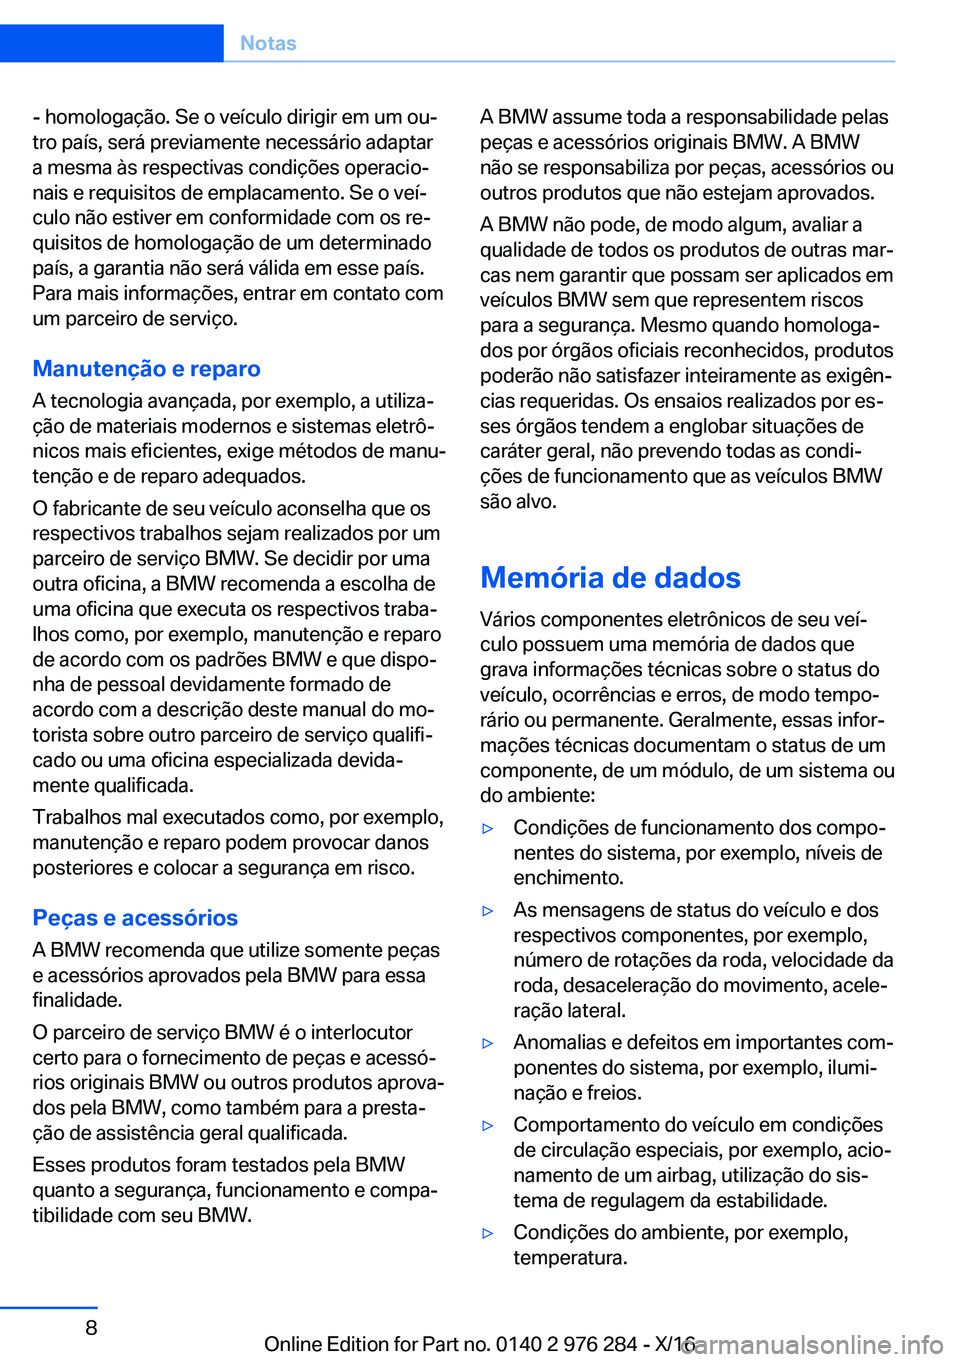 BMW 7 SERIES 2017  Manual do condutor (in Portuguese) �-� �h�o�m�o�l�o�g�a�ç�ã�o�.� �S�e� �o� �v�e�í�c�u�l�o� �d�i�r�i�g�i�r� �e�m� �u�m� �o�uª�t�r�o� �p�a�í�s�,� �s�e�r�á� �p�r�e�v�i�a�m�e�n�t�e� �n�e�c�e�s�s�á�r�i�o� �a�d�a�p�t�a�r
�a� �m�e�s�m